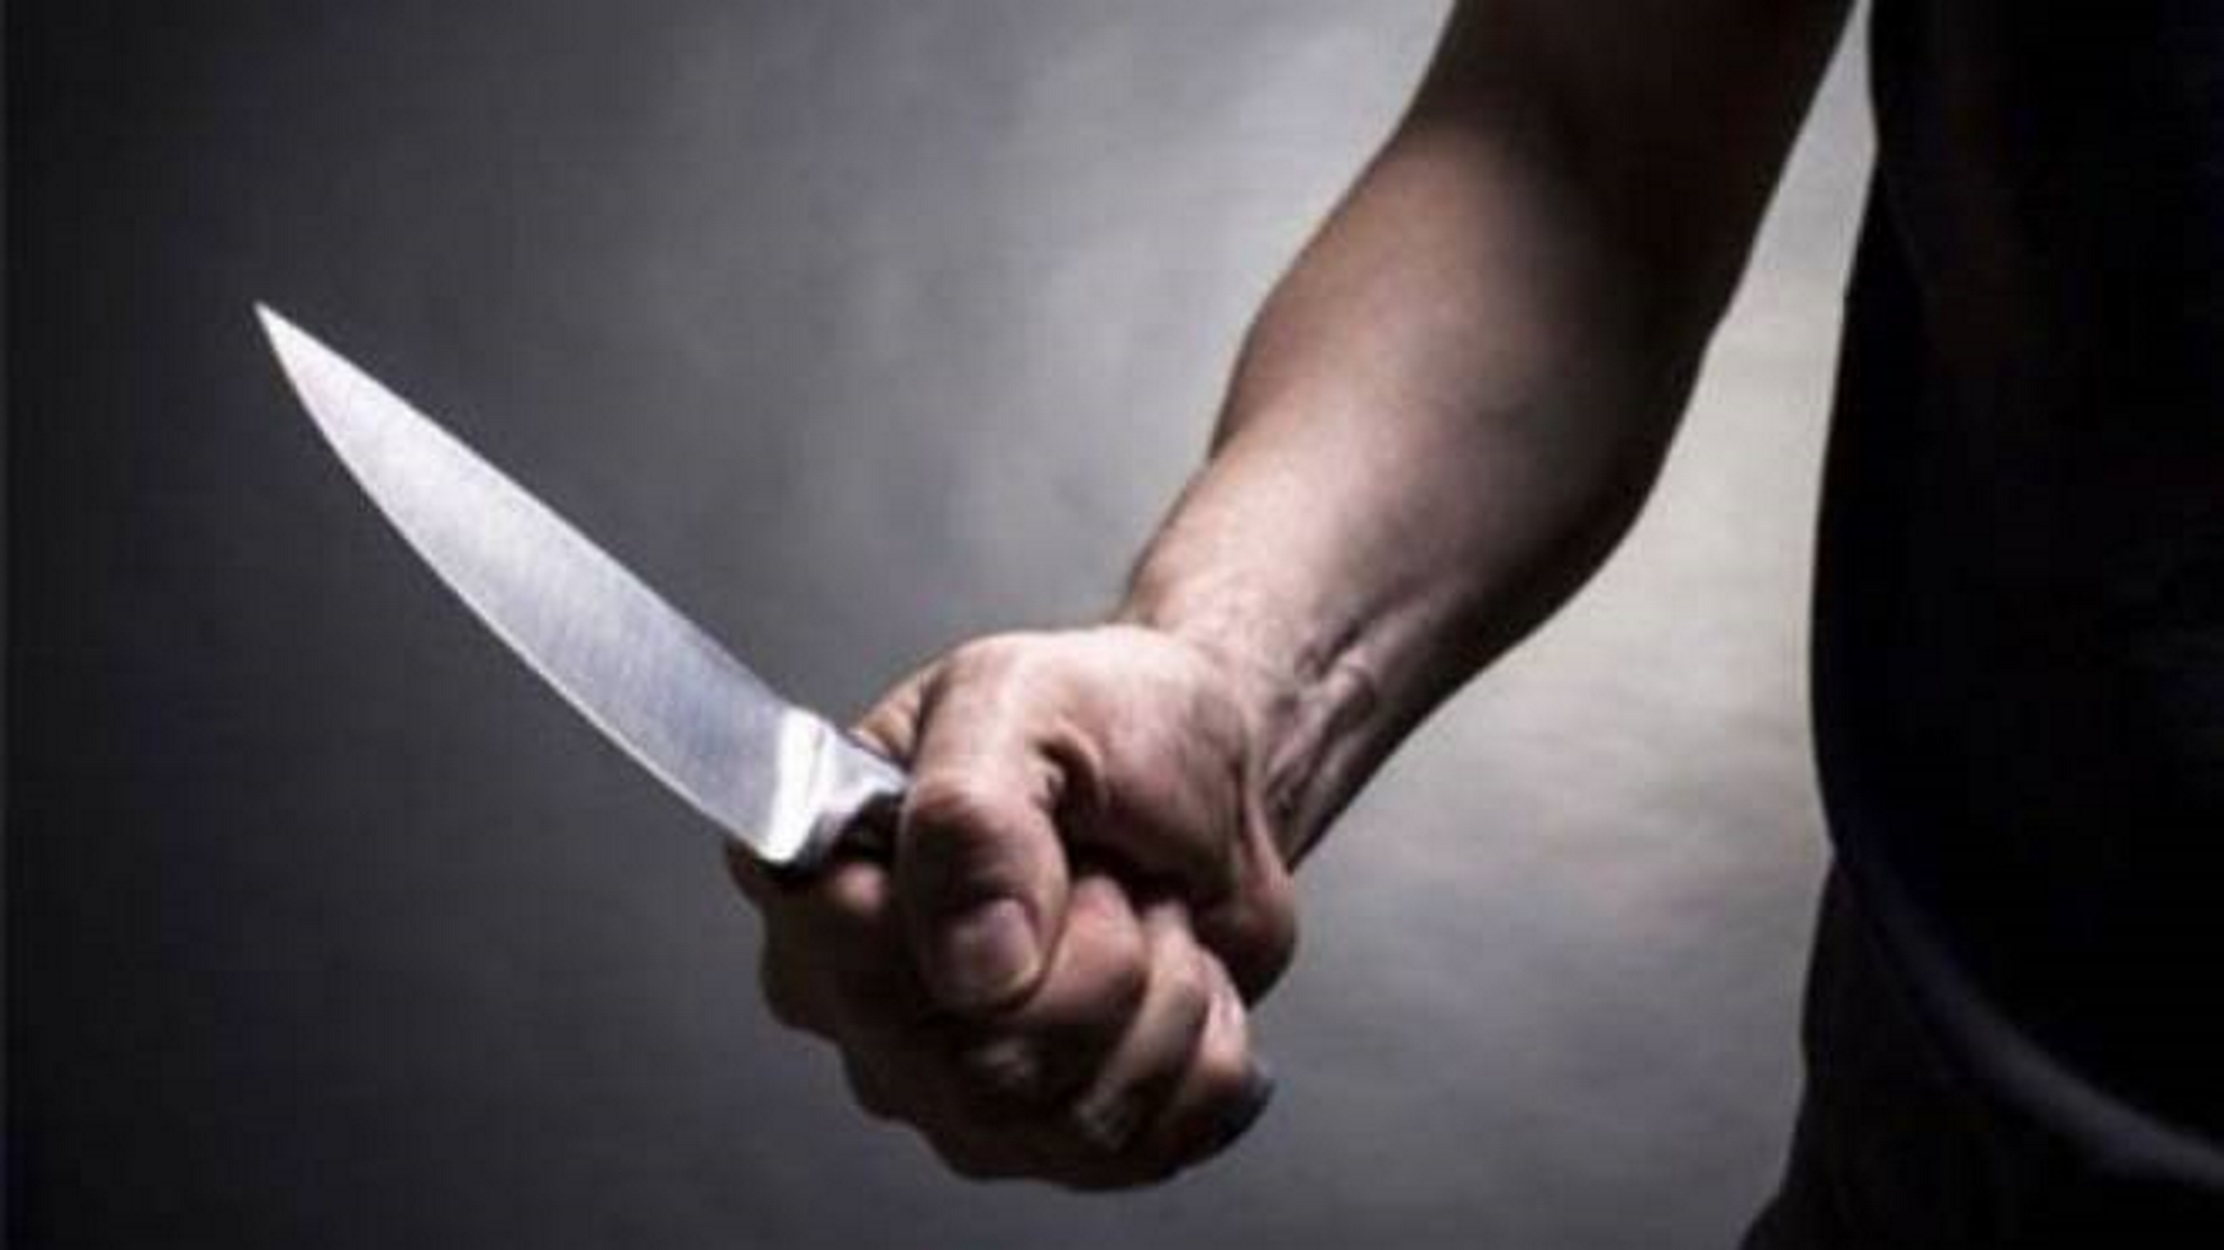 Χαροπαλεύει 19χρονος που μαχαιρώθηκε – Καταθέσεις για οπαδικές διαφορές